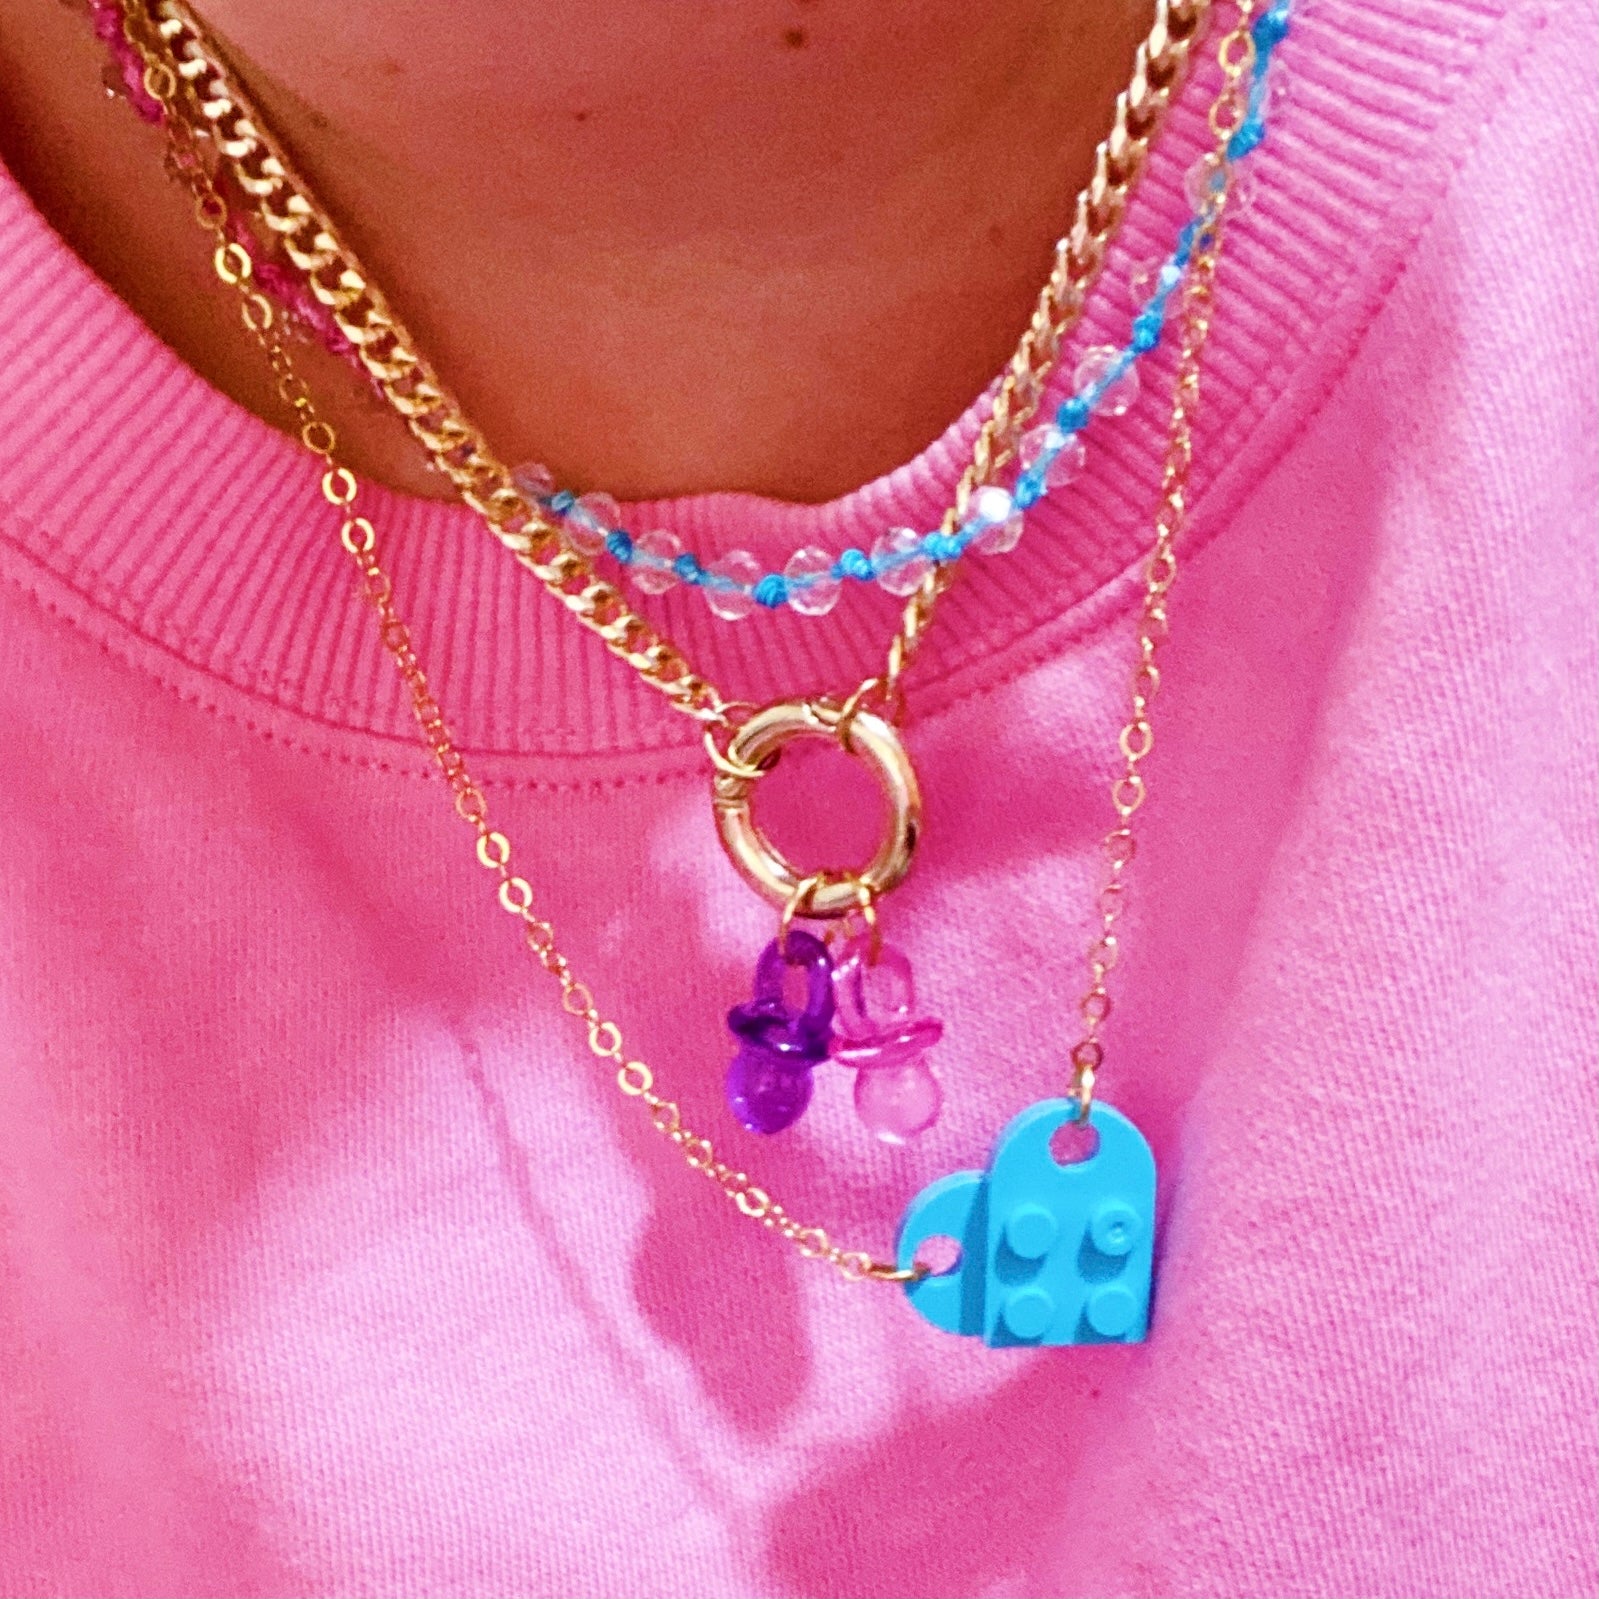 Blue Lego Heart Necklace - ROCKmint